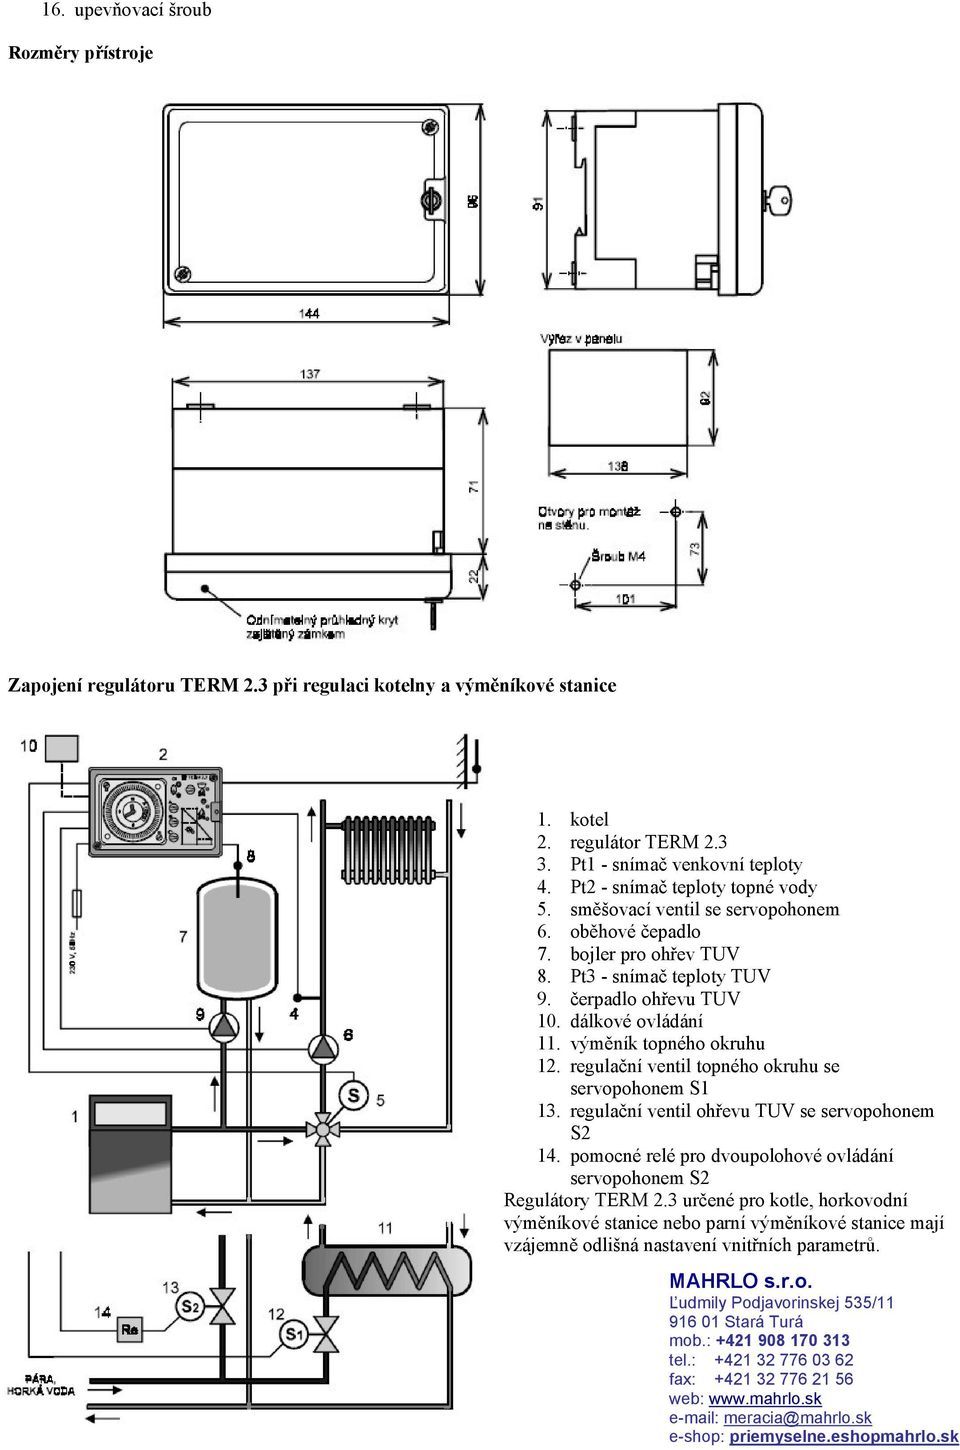 výměník topného okruhu 12. regulační ventil topného okruhu se servopohonem S1 13. regulační ventil ohřevu TUV se servopohonem S2 14.